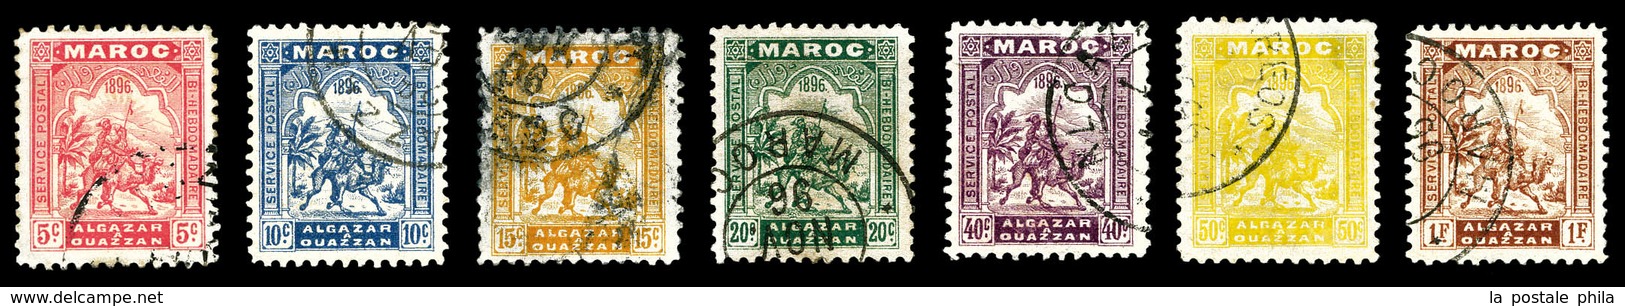 O MAROC POSTES LOCALES, N°2/8, Série De 1896, Les 7 Valeurs TB (certificat)   Qualité: O   Cote: 960 Euros - Poste Locali